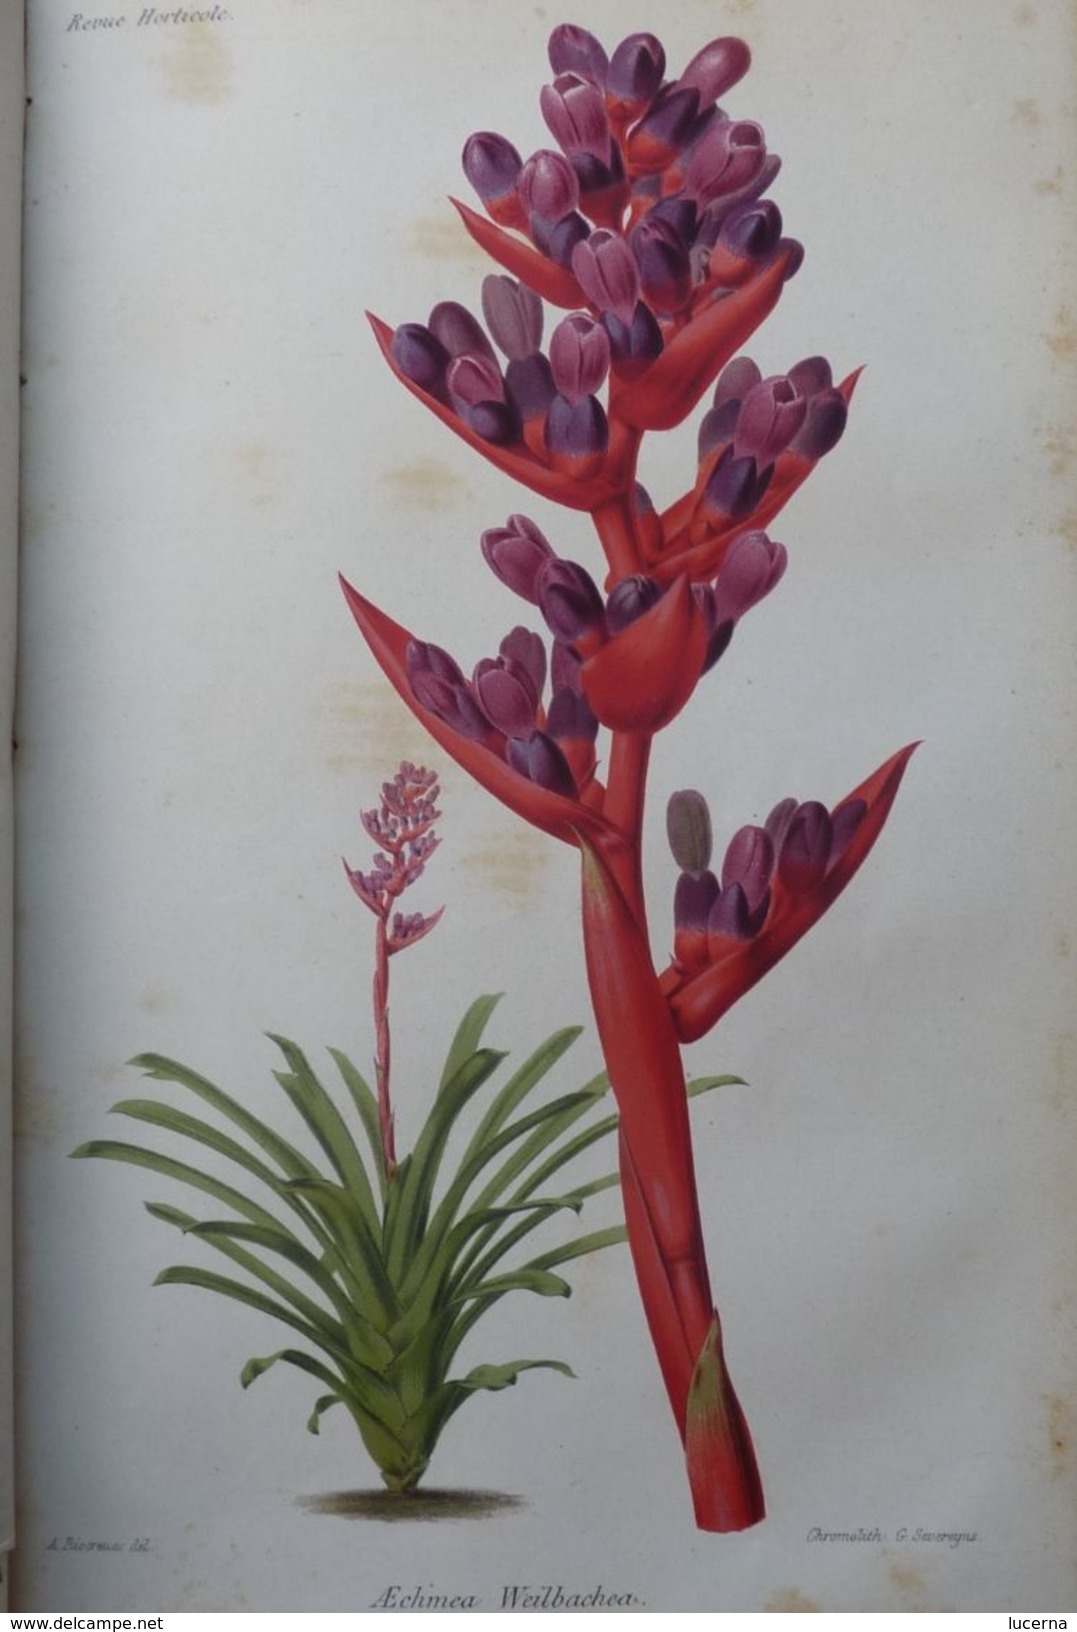 REVUE HORTICOLE 1870 ET 1871 journal d'horticulture pratique, fondé en 1829 par les auteurs du bon jardinier